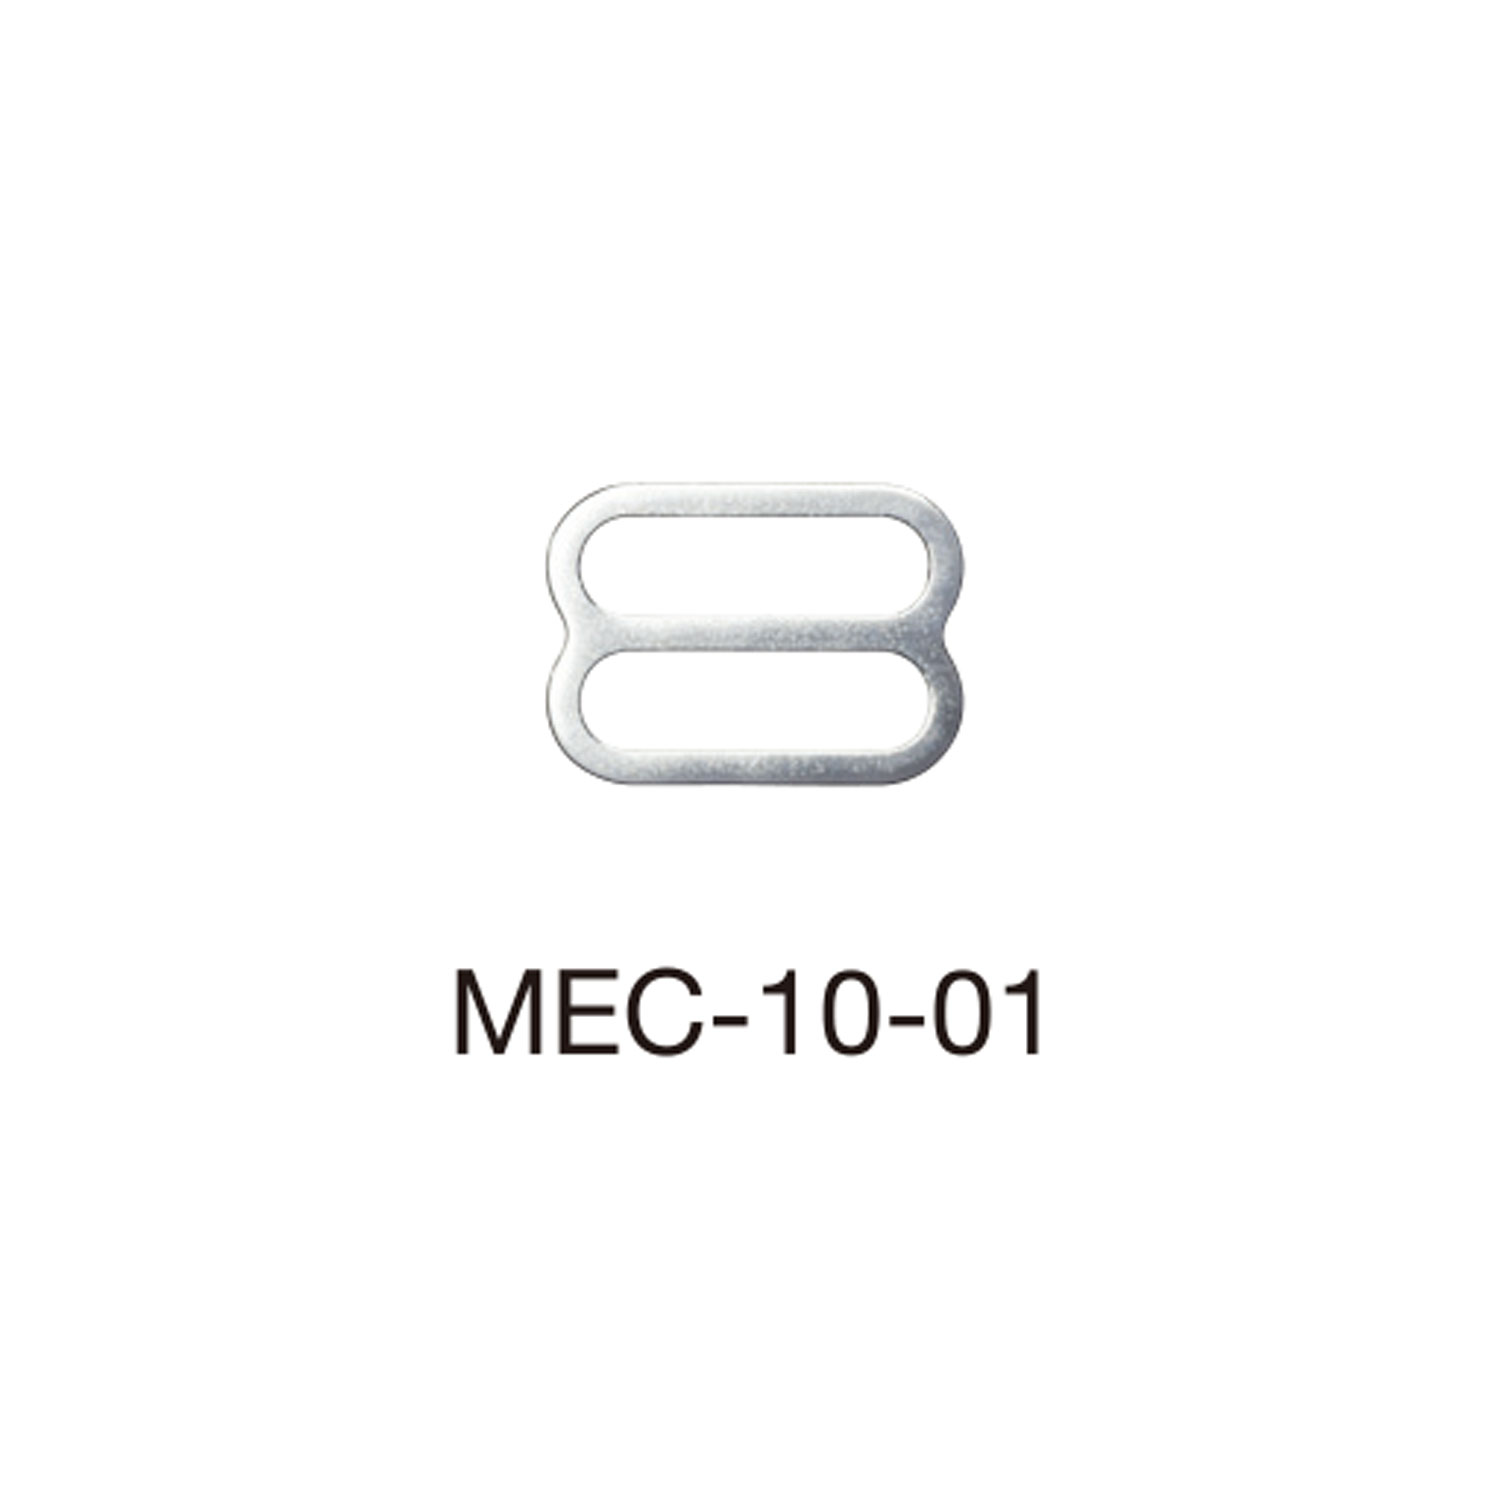 MEC10-01 Ajustador De Correa De Sujetador Para Tela Delgada 10 Mm * Compatible Con Detector De Aguja[Hebillas Y Anillo] Morito